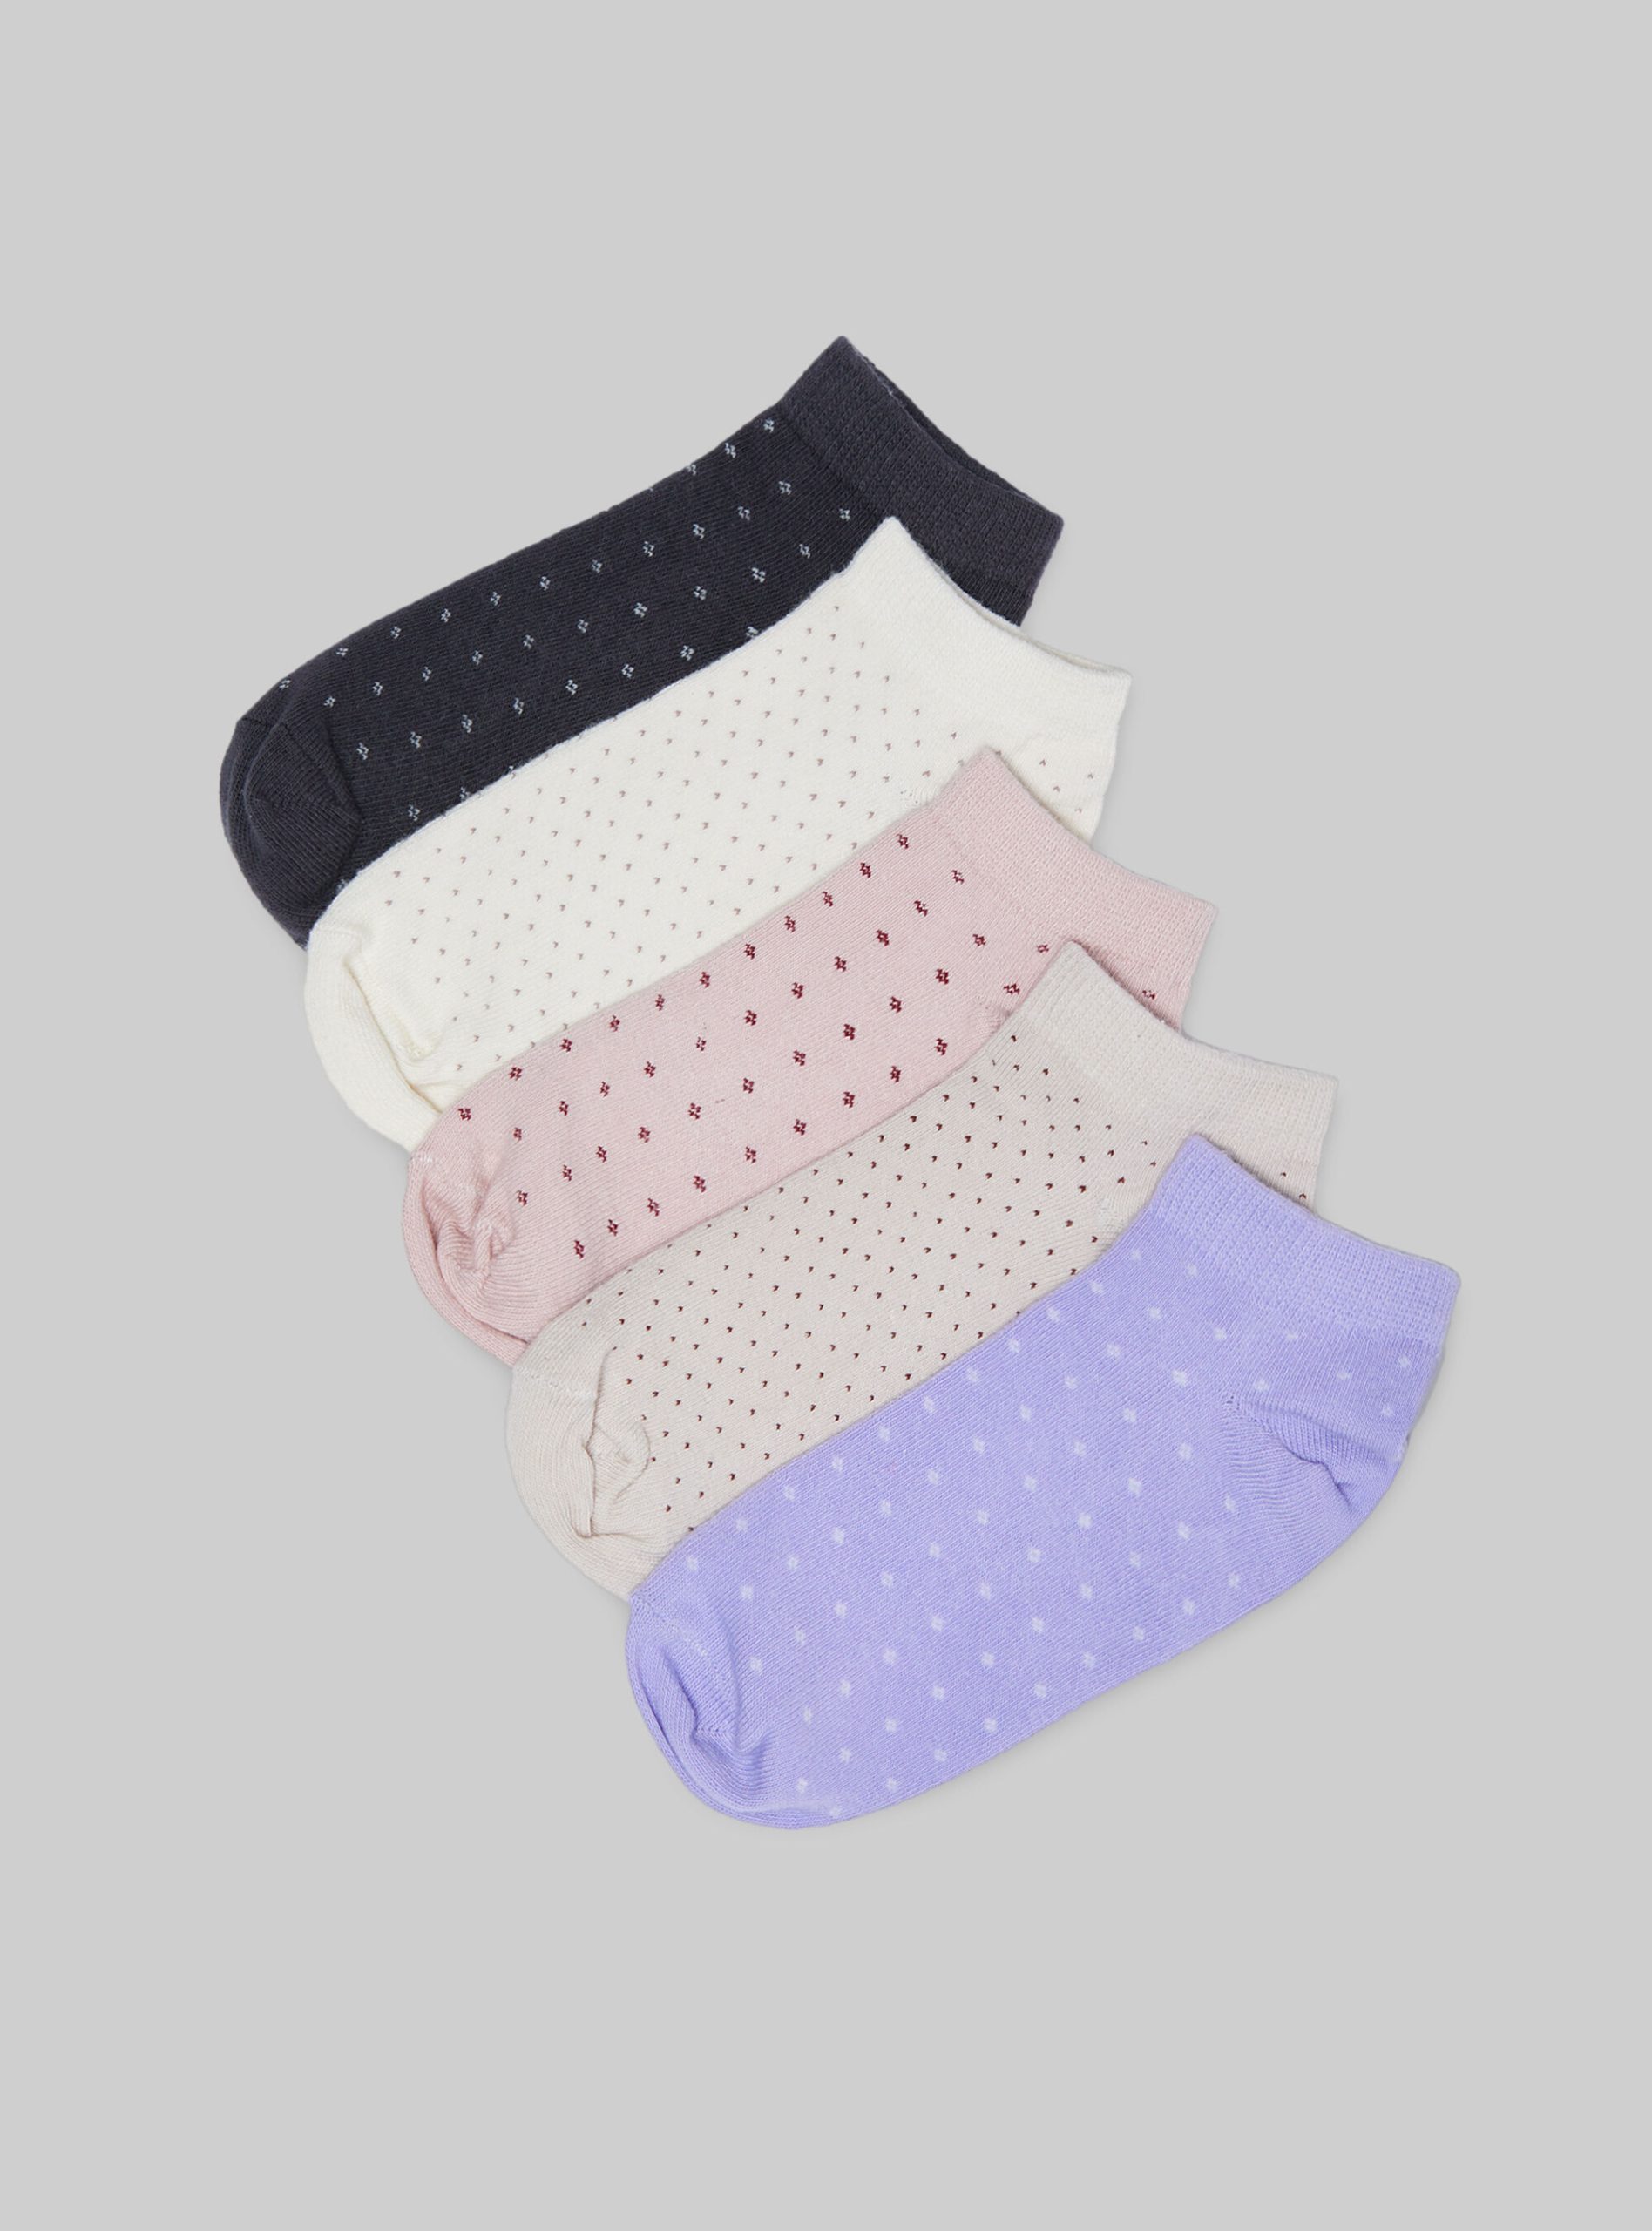 Frauen Alcott Socken Set Of 5 Pairs Of Socks Frühbucherrabatt Multicolor – 1